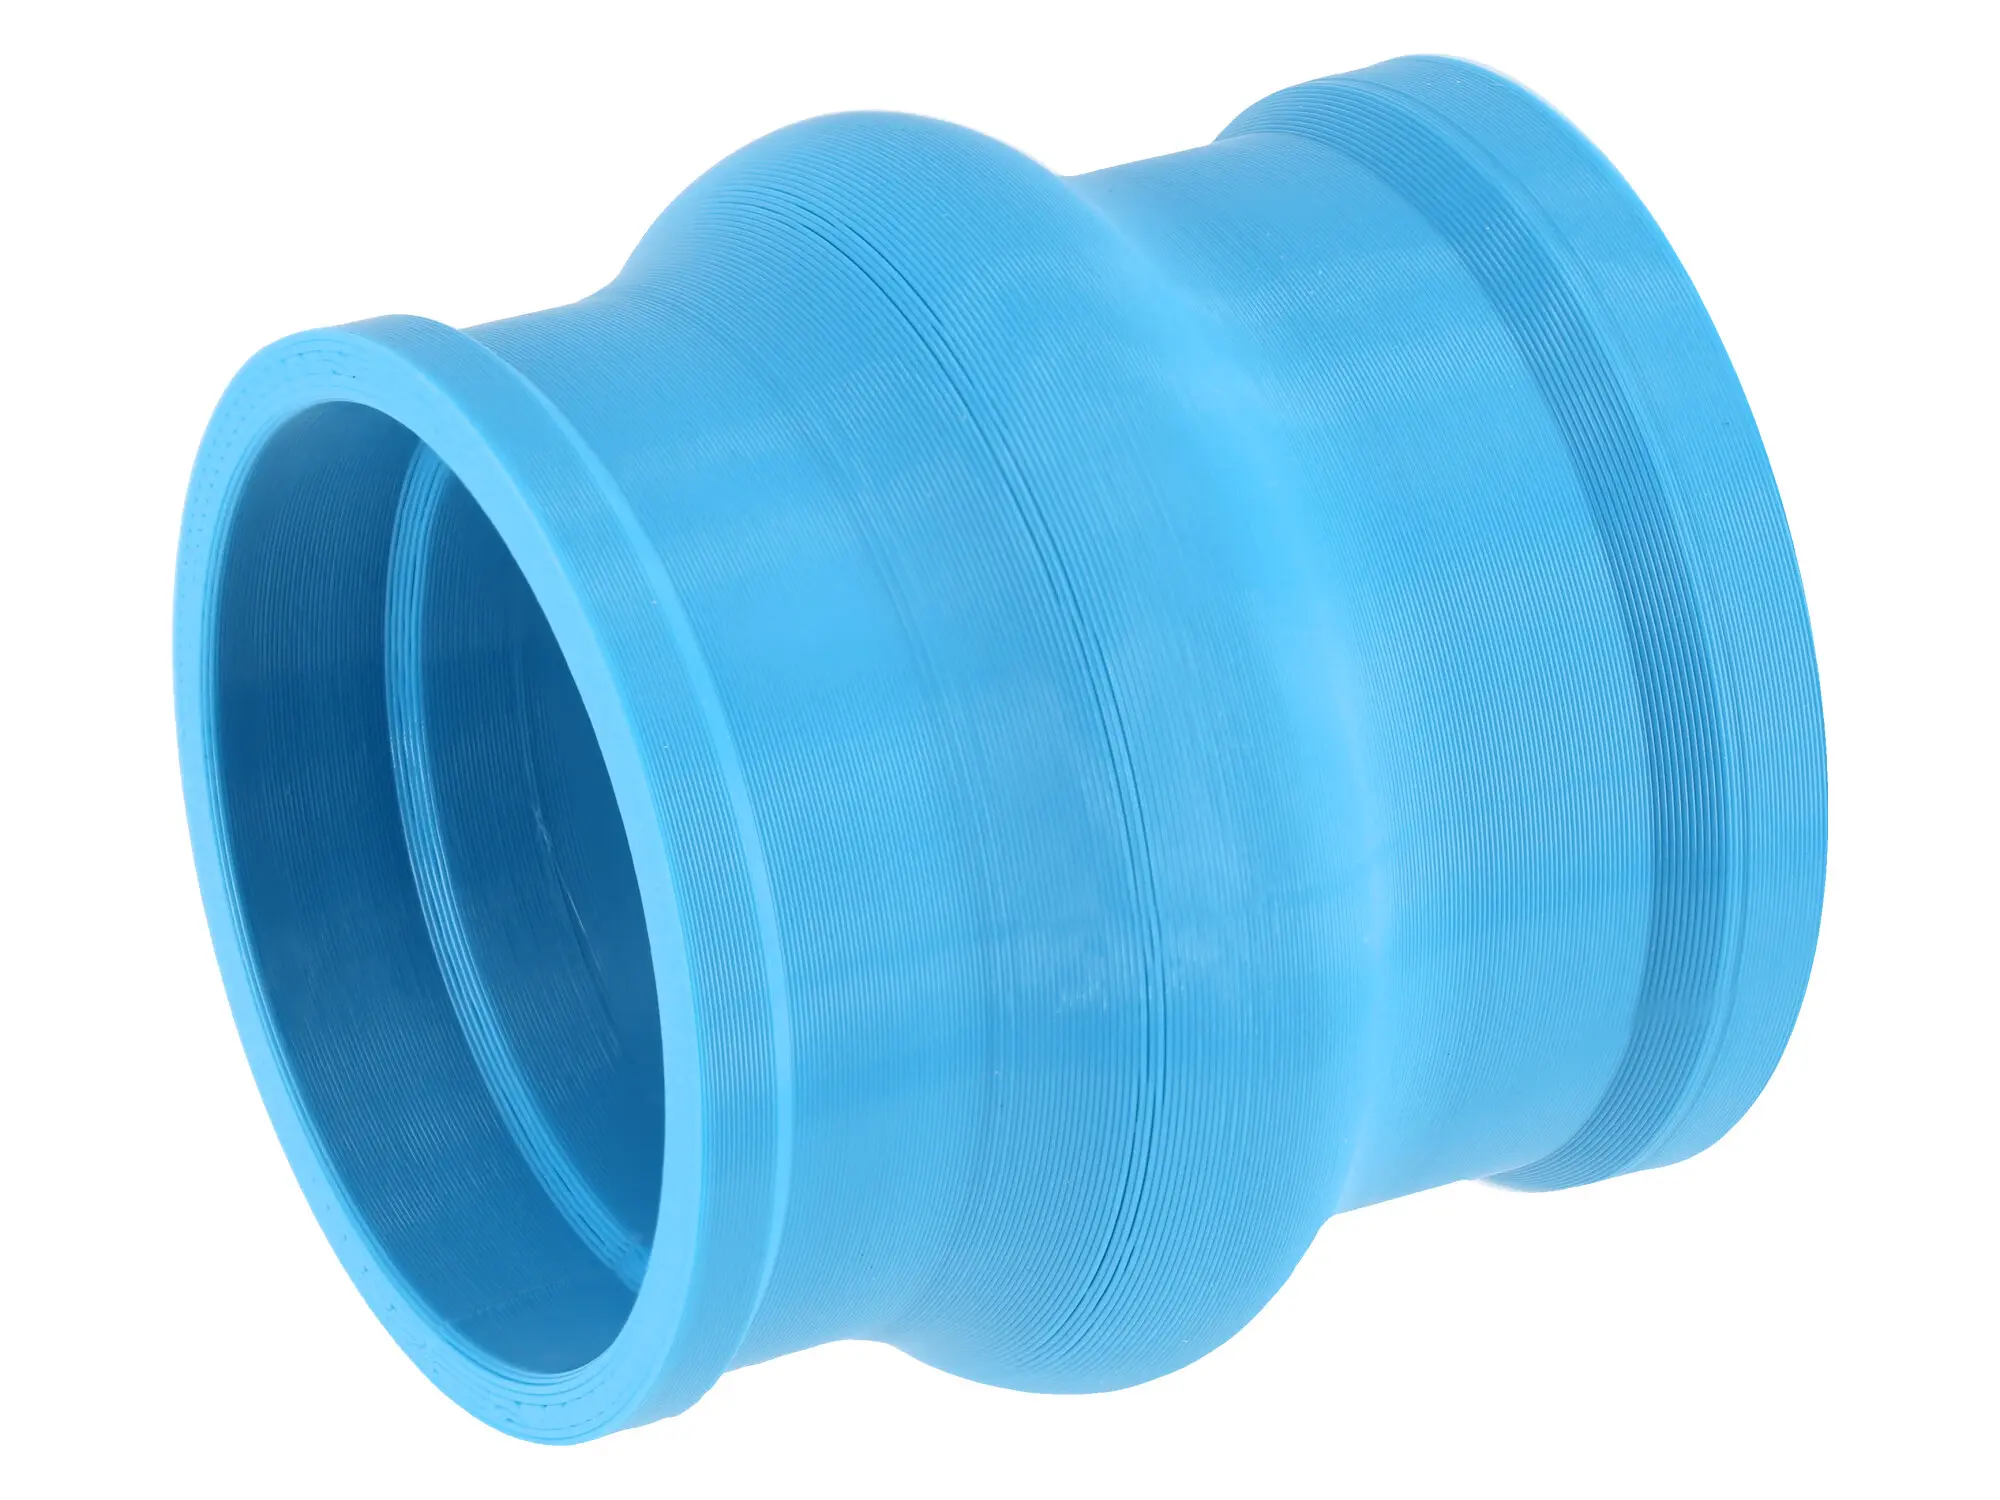 Ansaugmuffe Hellblau, 3D-Druck, für Gehäusemittelteil Tuning auf Tuning-Vergaser - für S51, S50, S70, S53, S83, Art.-Nr.: 10073111 - Bild 1